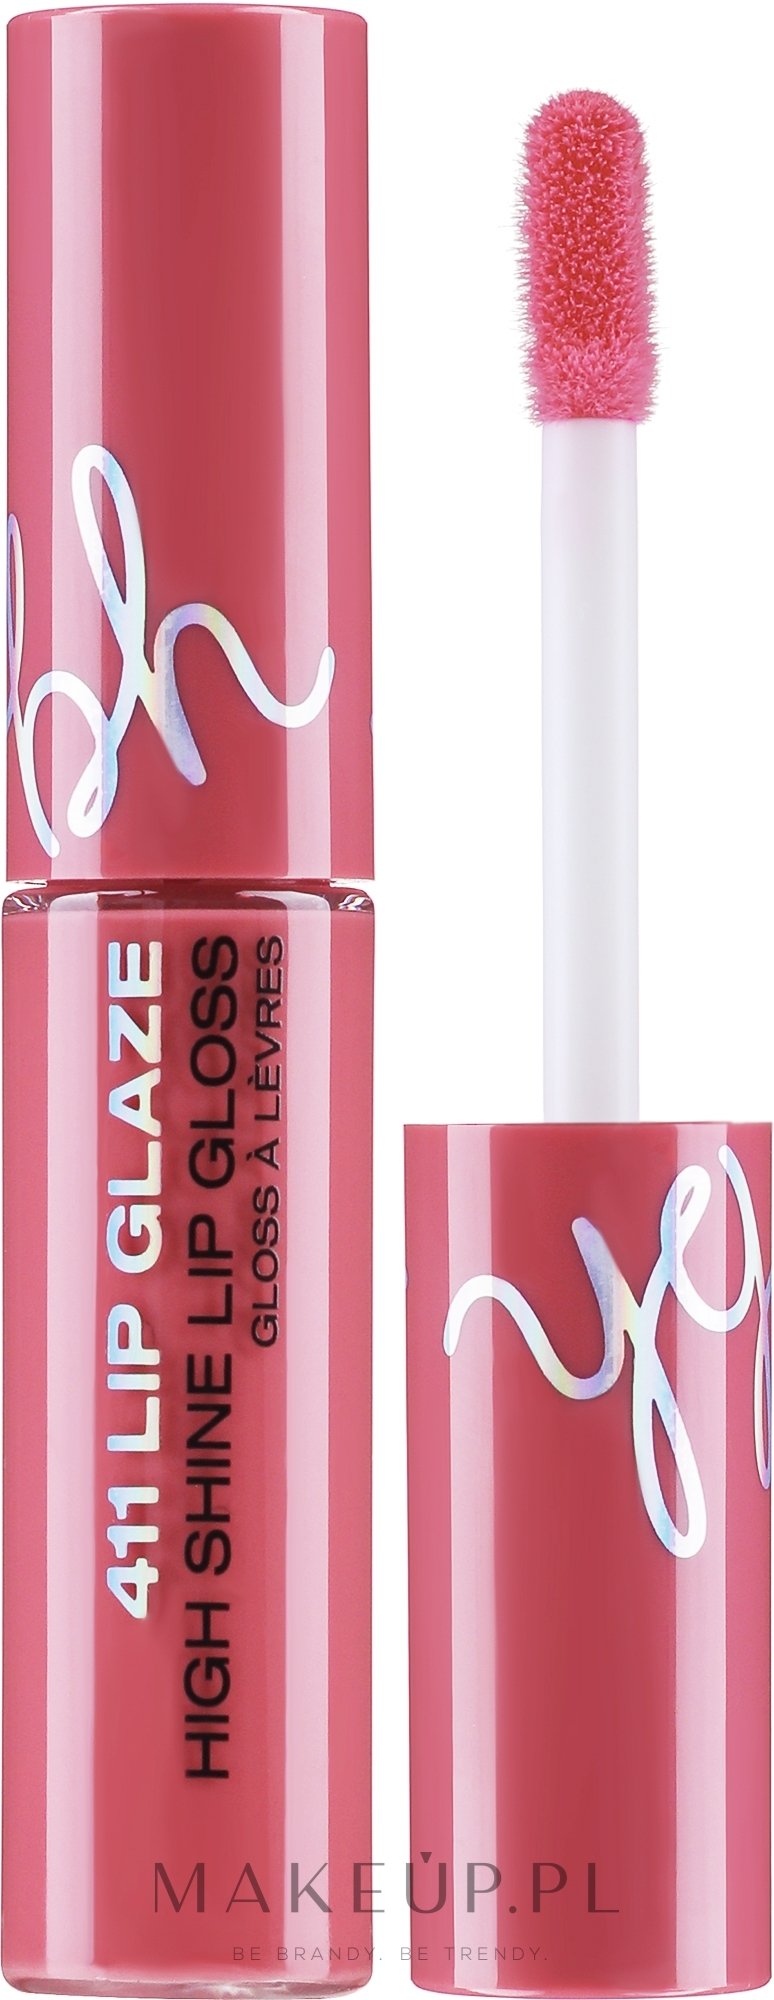 Błyszczyk do ust - BH Cosmetics Los Angeles 411 Lip Glaze High Shine Cream Gloss — Zdjęcie Chatter